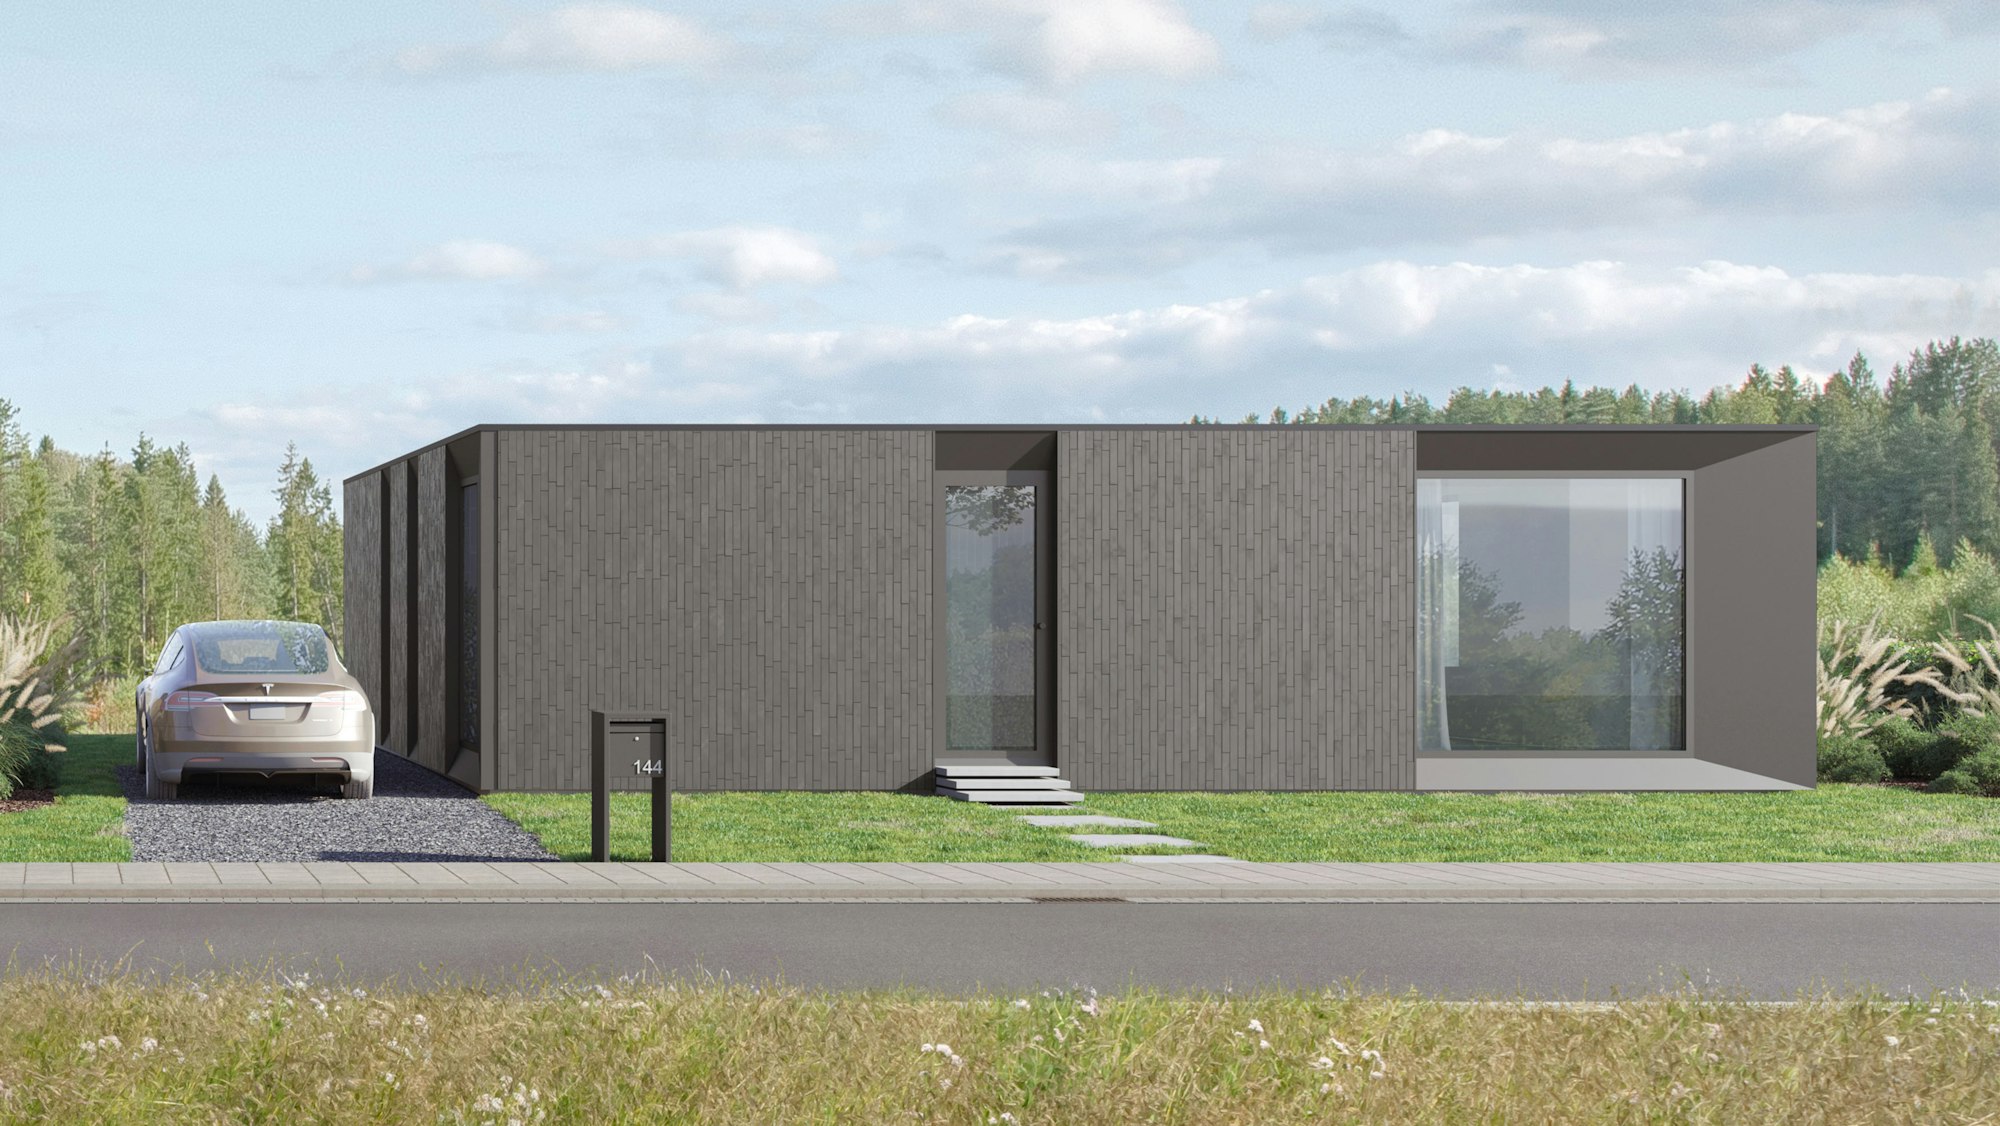 Skilpod #144 — houtskeletbouw bungalow woning met 4 slaapkamers, modern design met zwarte steen